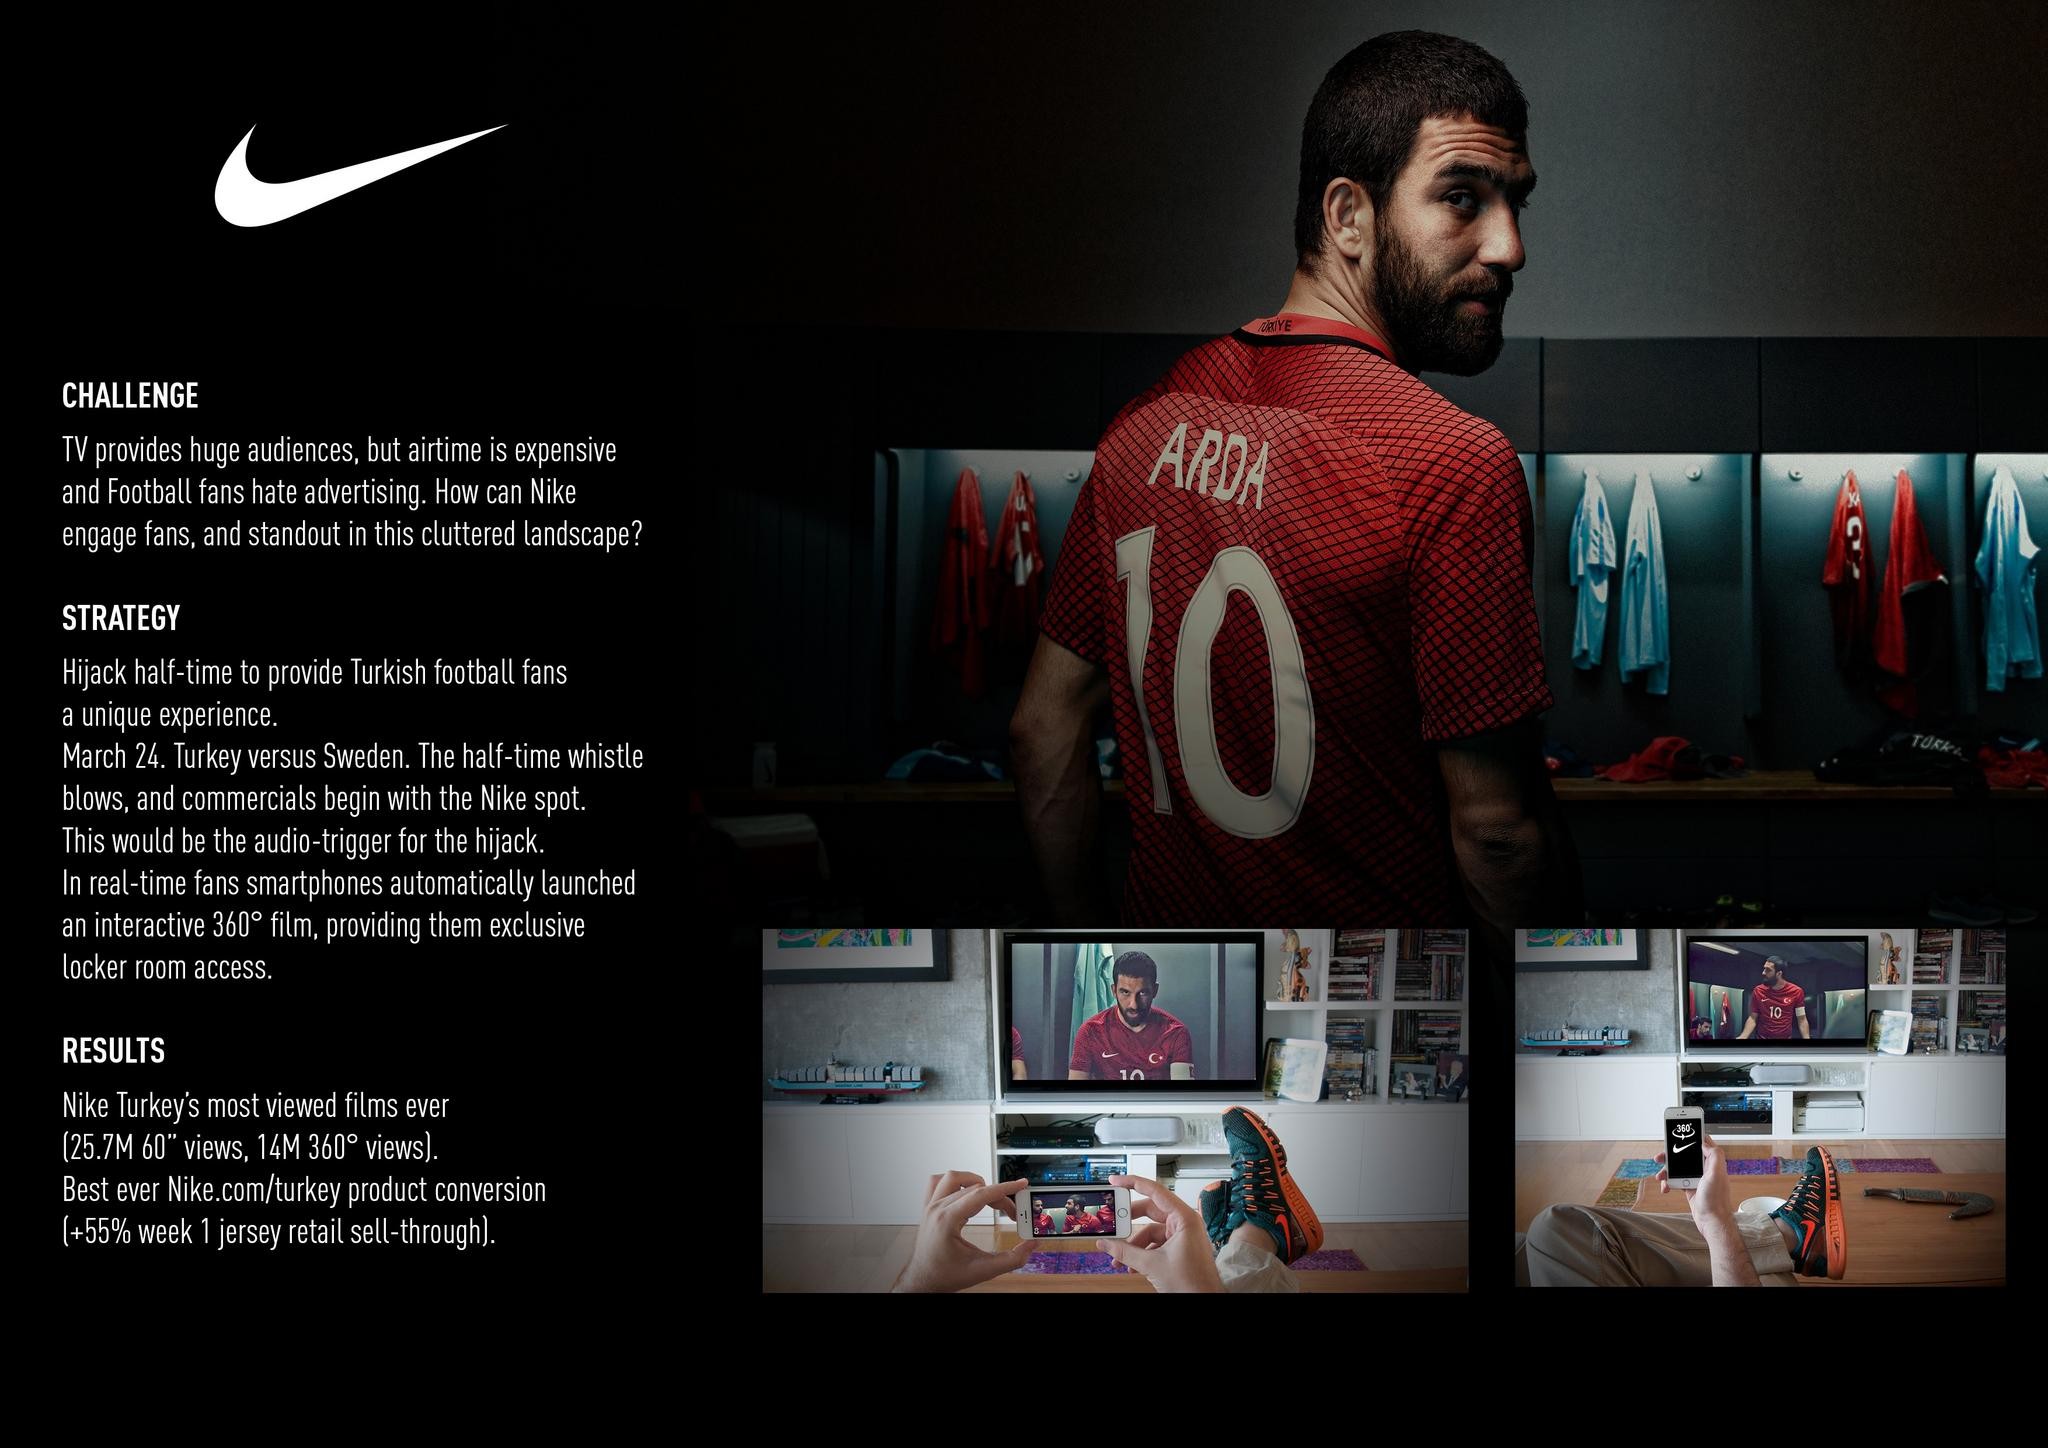 Nike's Half Time Hijack